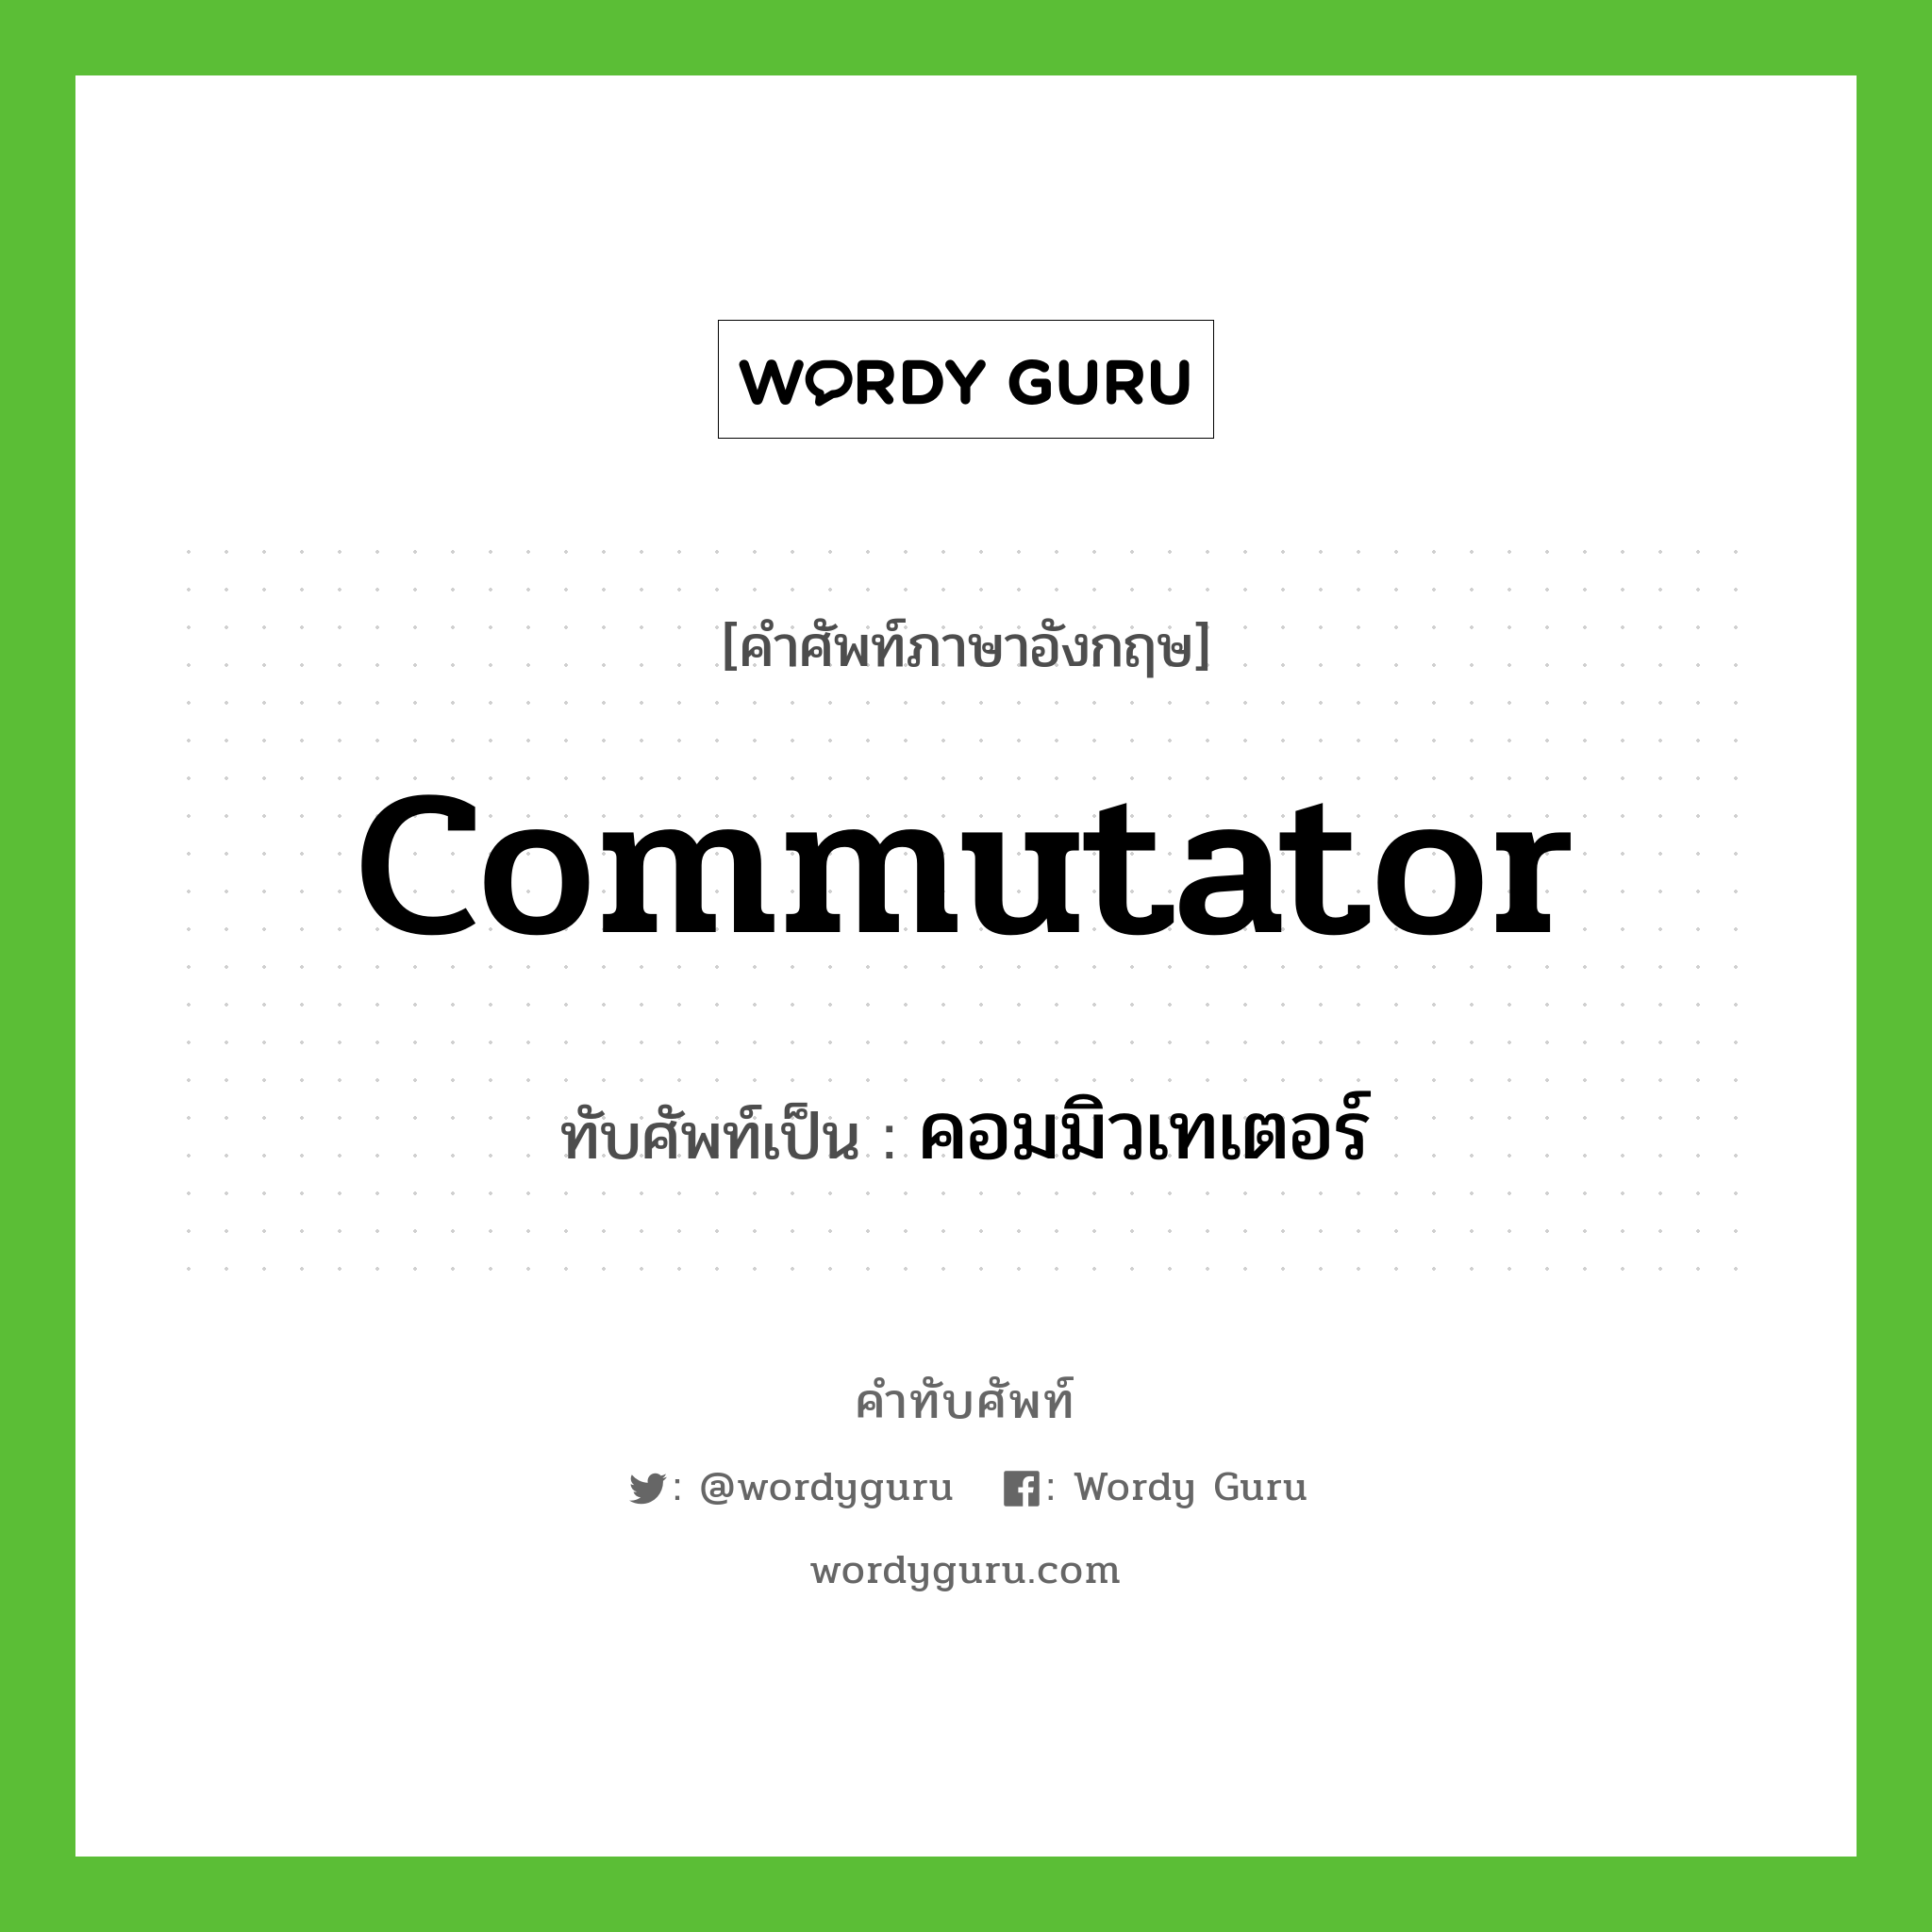 commutator เขียนเป็นคำไทยว่าอะไร?, คำศัพท์ภาษาอังกฤษ commutator ทับศัพท์เป็น คอมมิวเทเตอร์